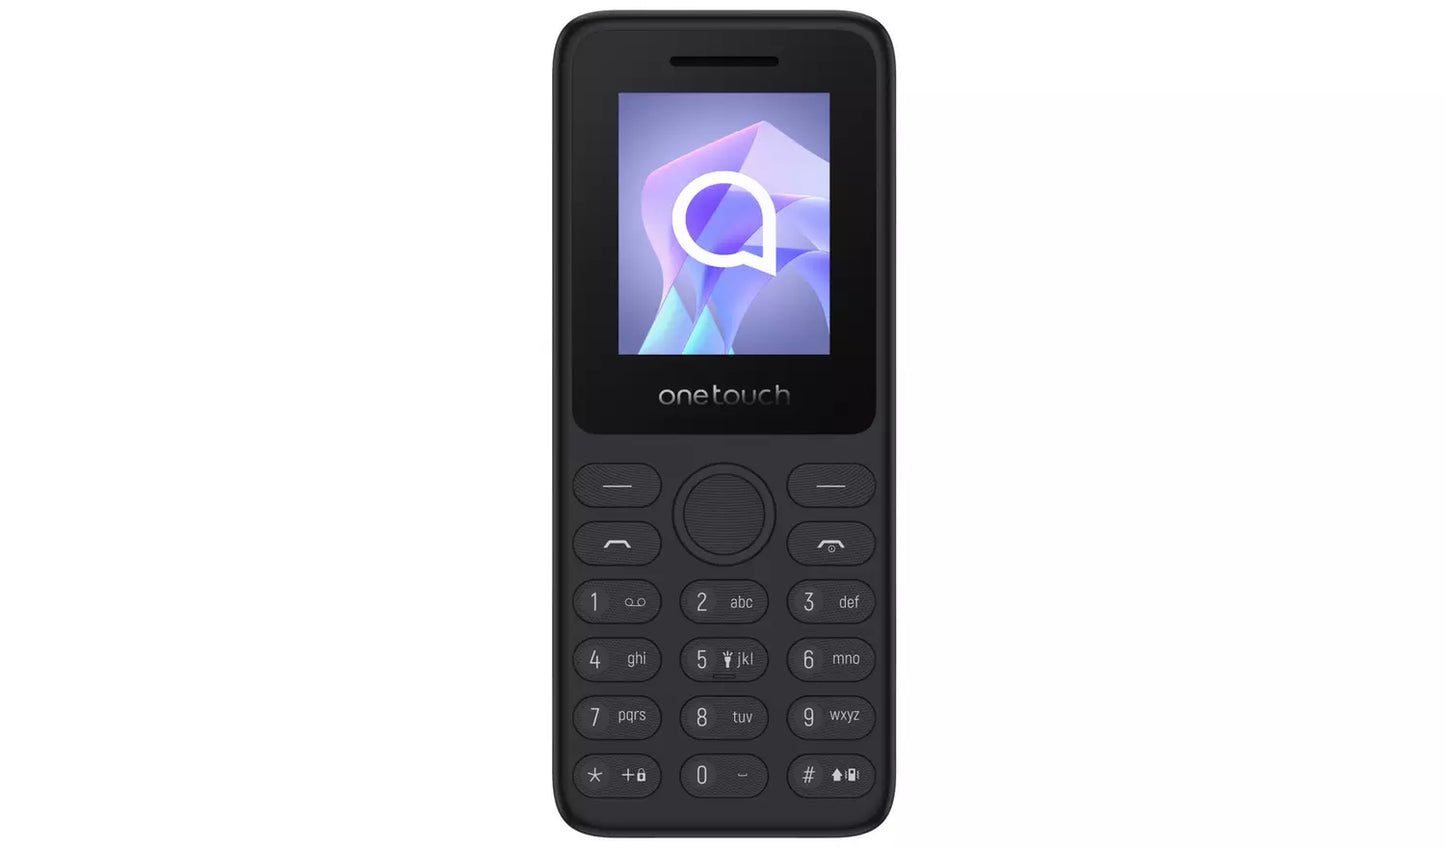 TCL 4021 Mobile Phone - Dark Grey SIM FREE T301P-3BLCA112